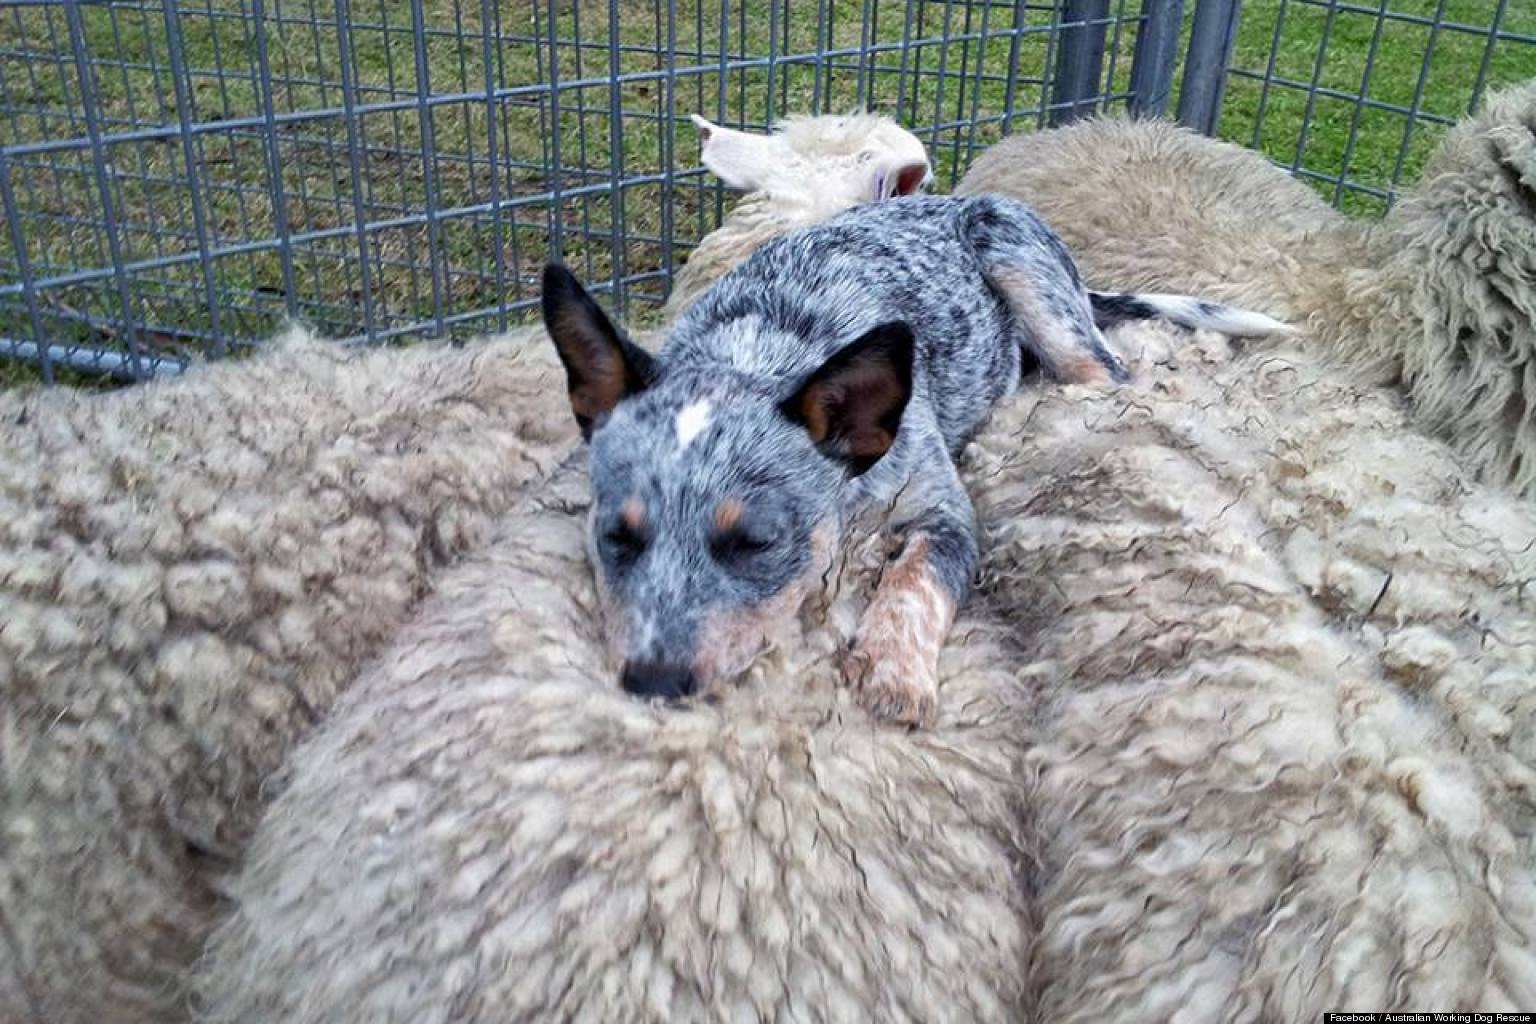 Australian herding dog resting on the backs of sheep